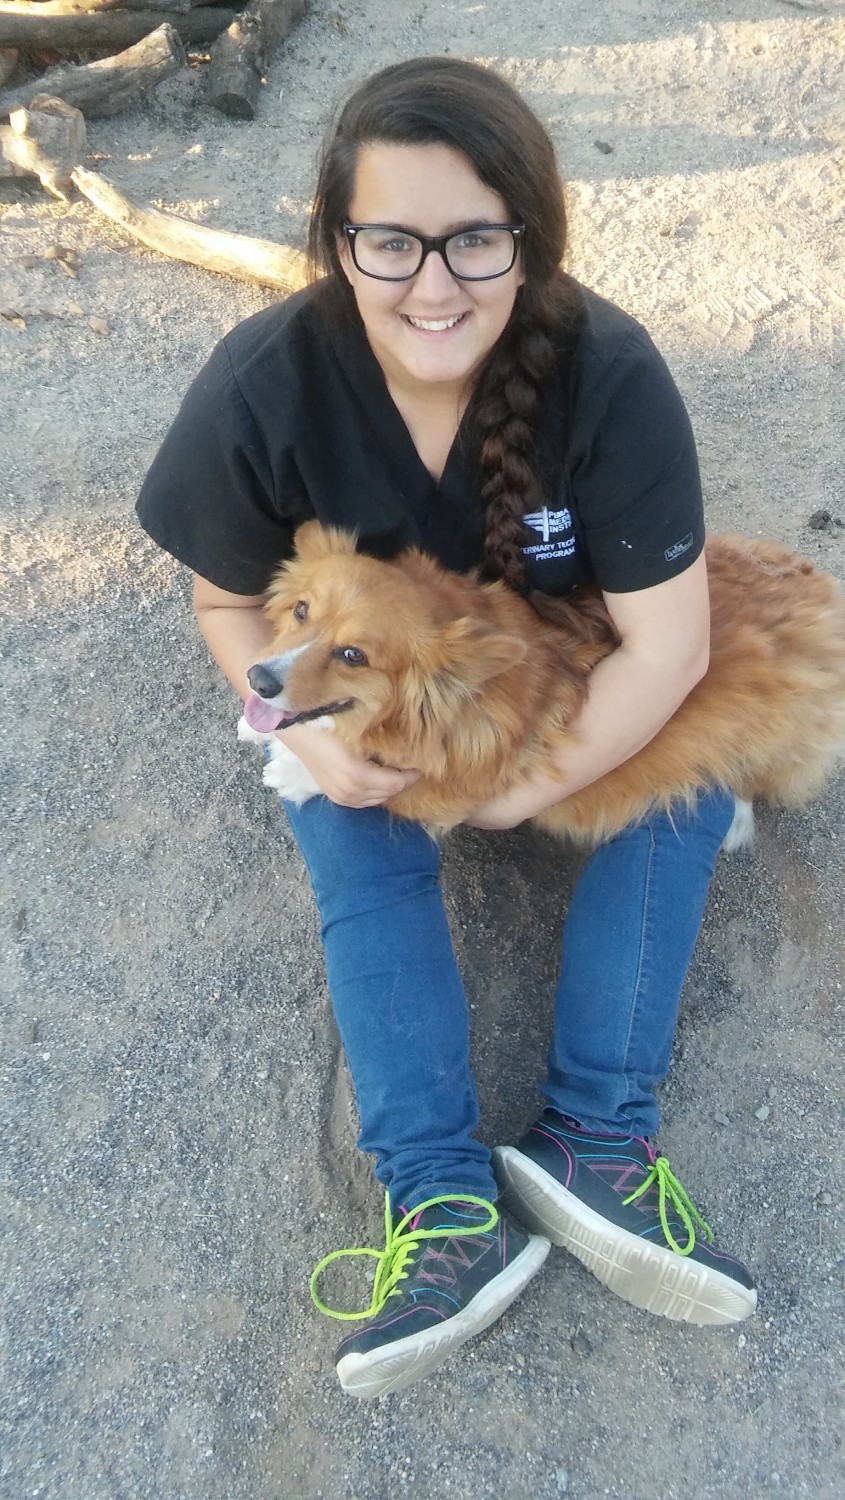 Point Loma Veterinary Clinic - Ocean Beach, San Diego, CA - Our Staff - Caitlyn